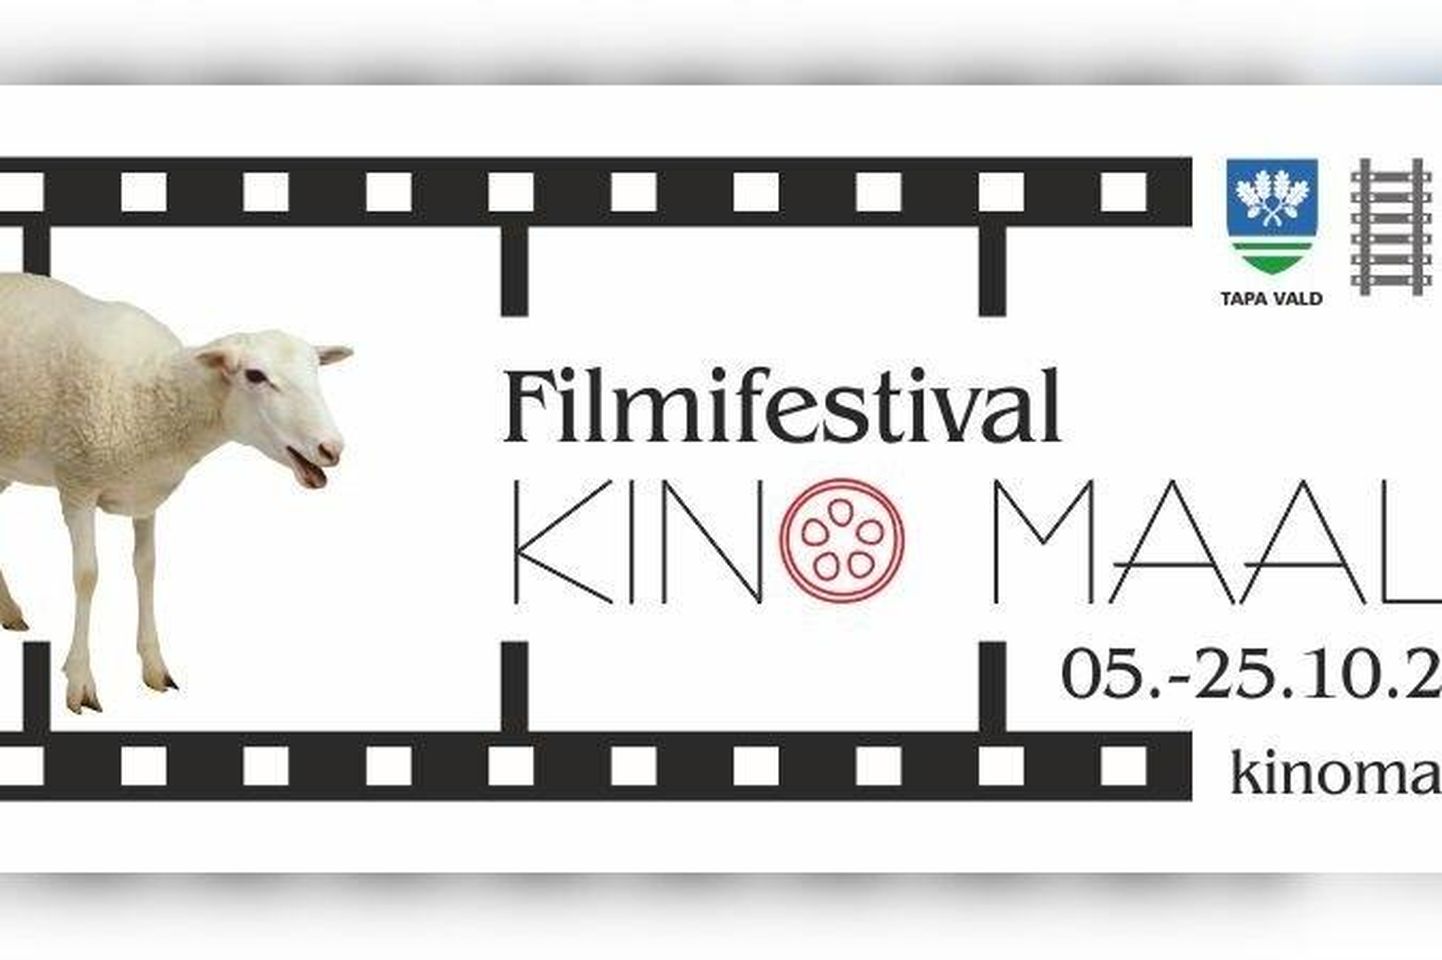 Filmifestival "Kino maale" toimub 5.–25. oktoobrini.